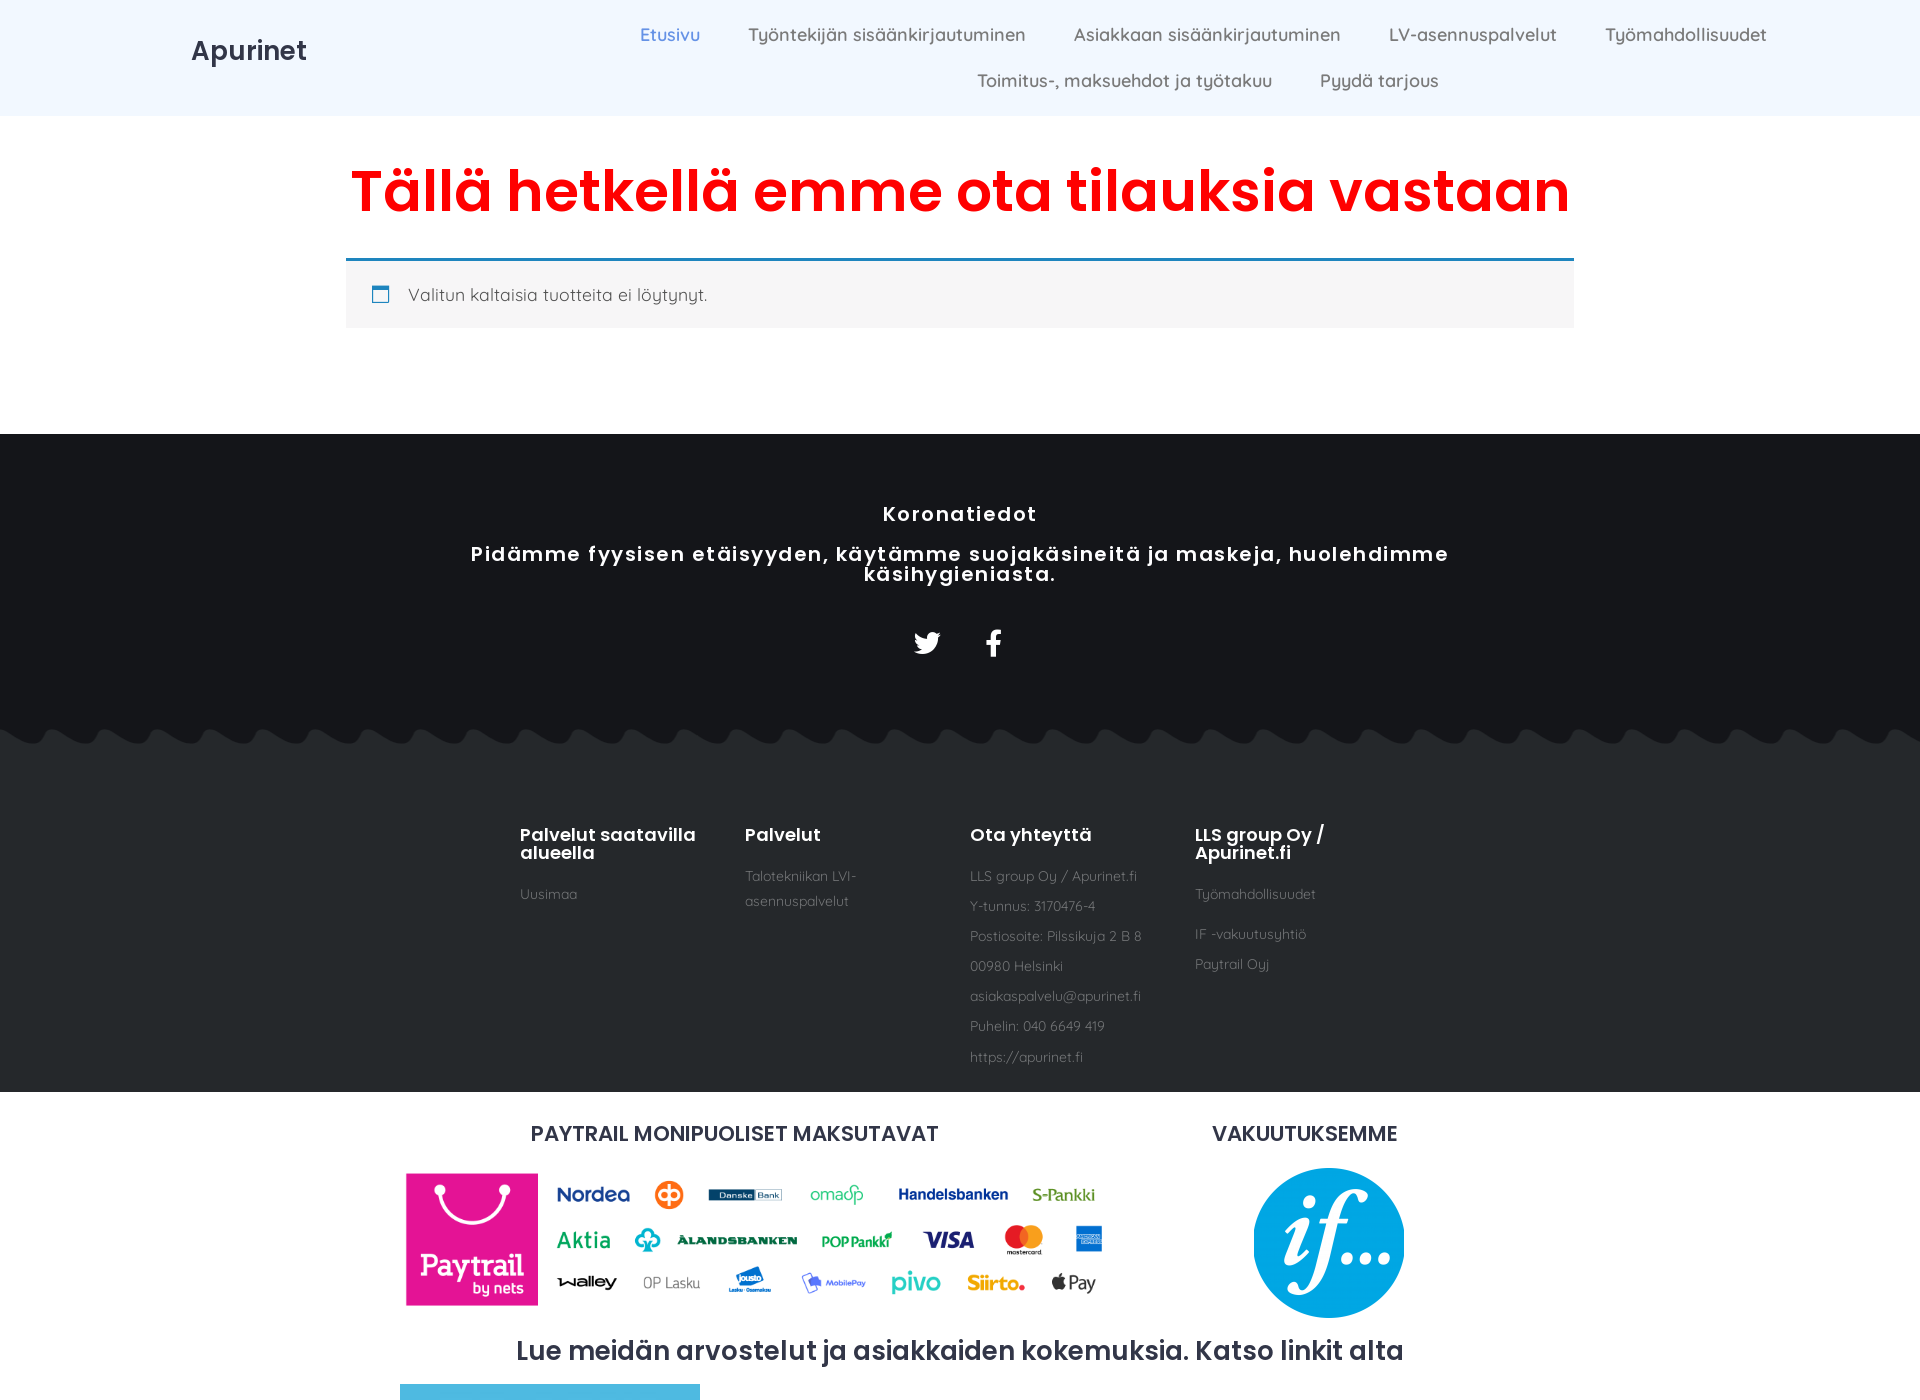 Näyttökuva apurinet.fi